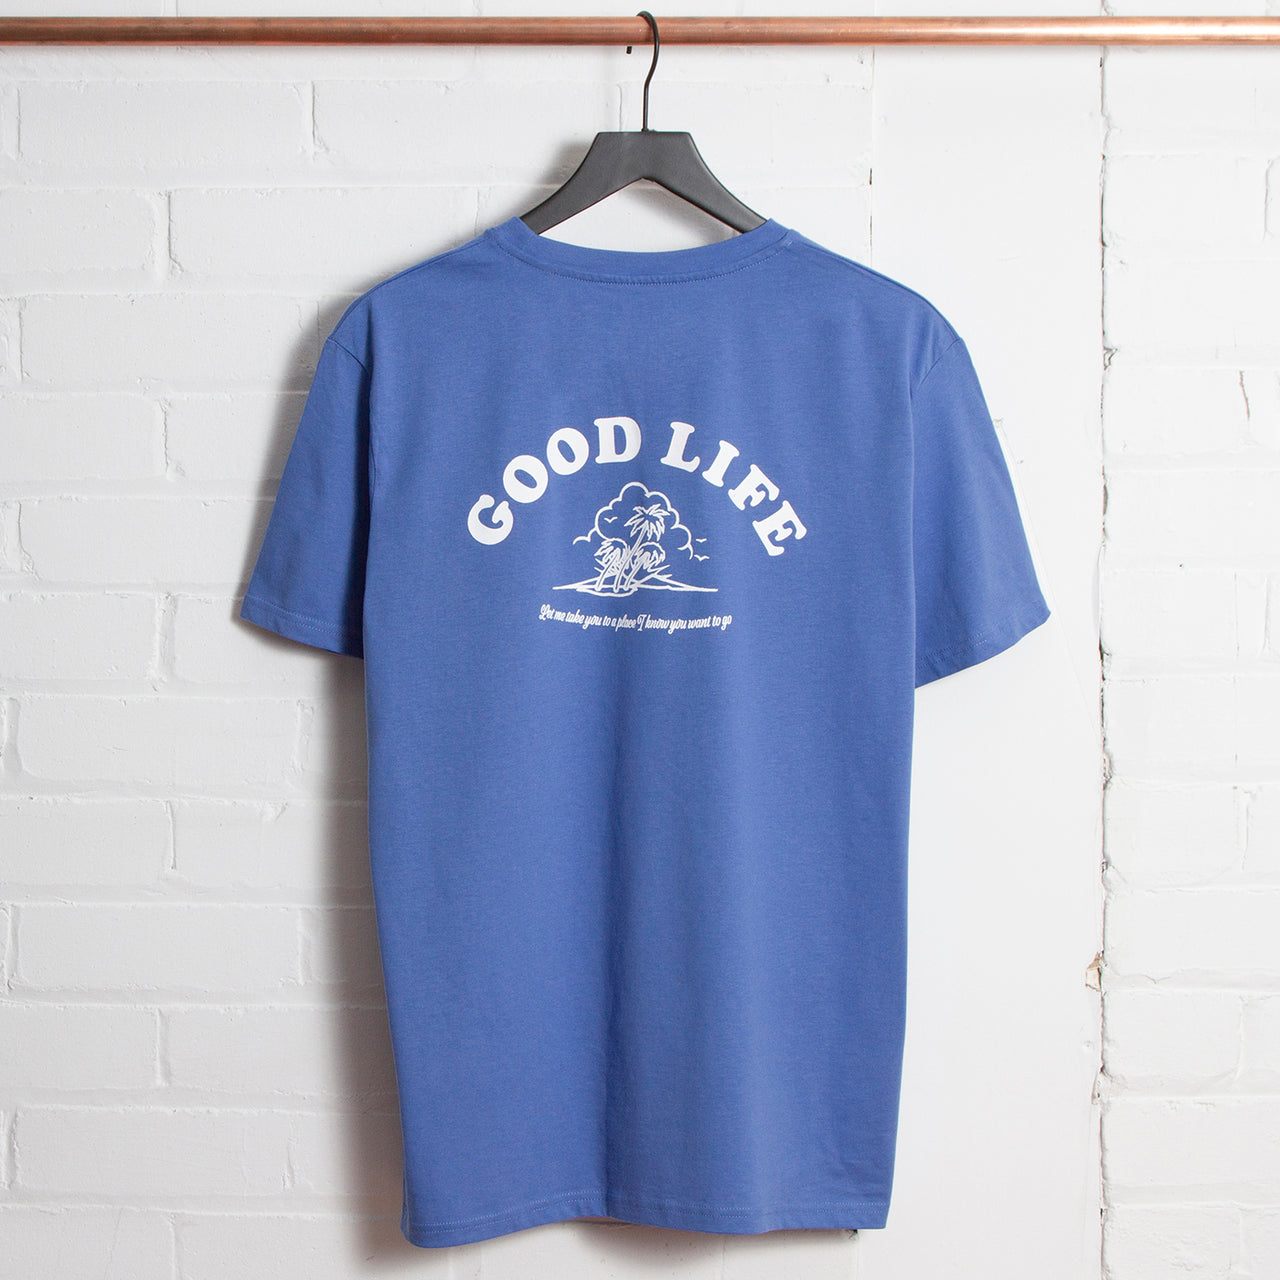 Good Life - Tshirt - Bright Blue